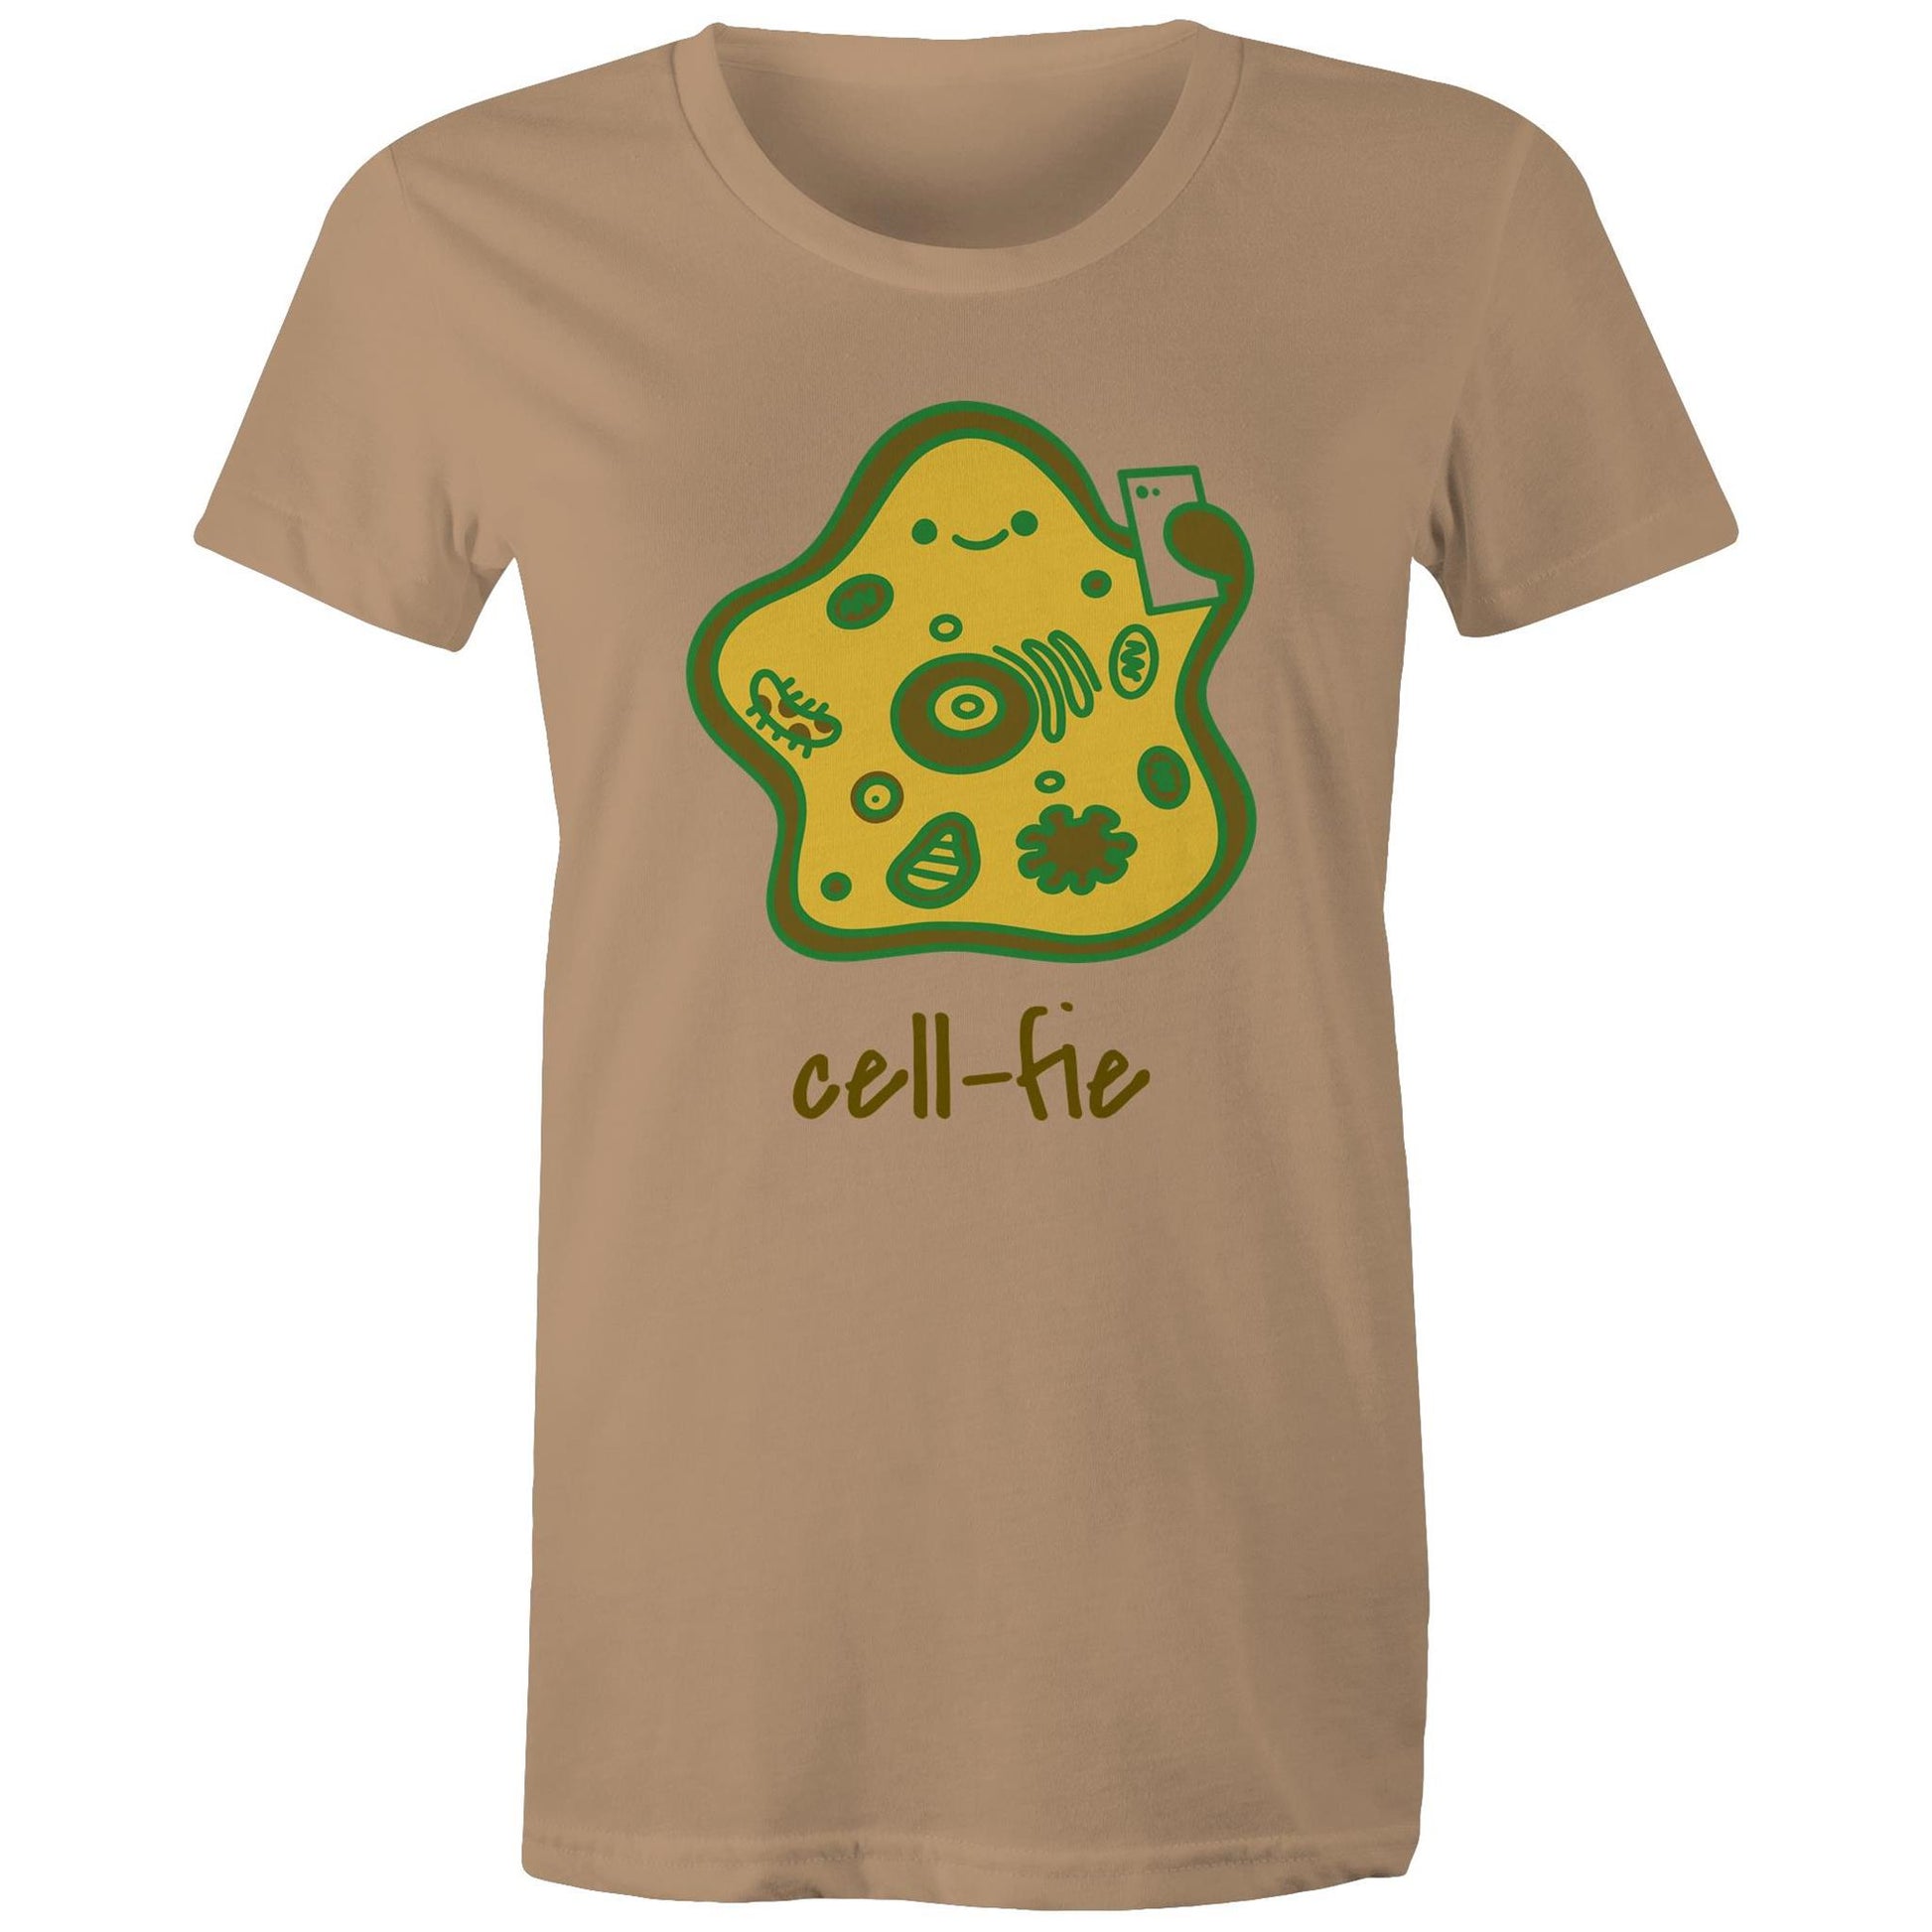 Cell-fie - Womens T-shirt Tan Womens T-shirt Science